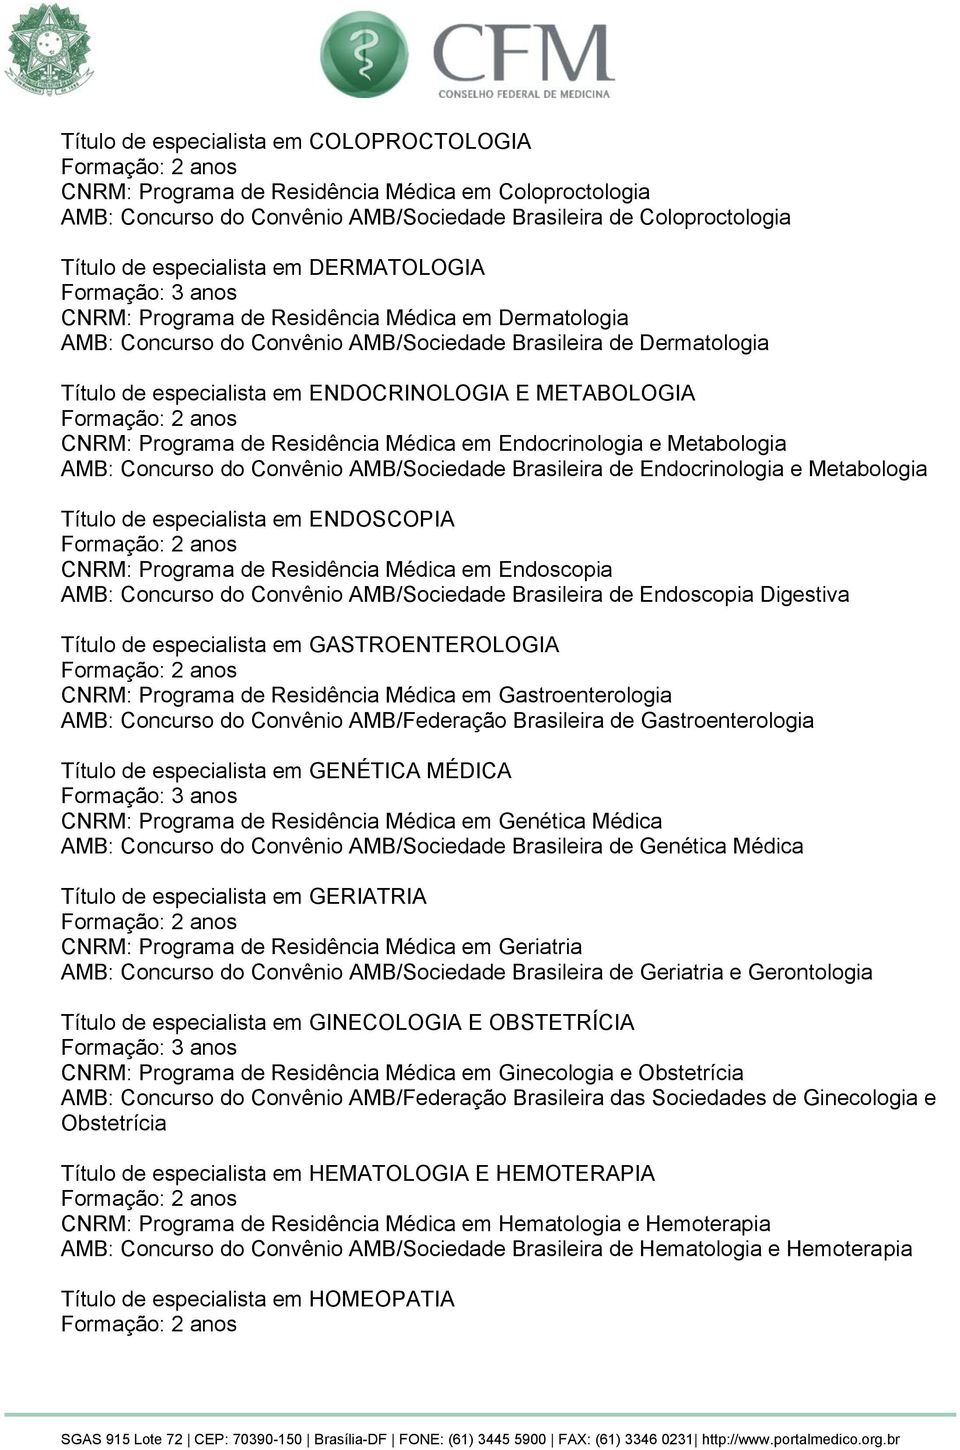 Programa de Residência Médica em Endocrinologia e Metabologia AMB: Concurso do Convênio AMB/Sociedade Brasileira de Endocrinologia e Metabologia Título de especialista em ENDOSCOPIA CNRM: Programa de